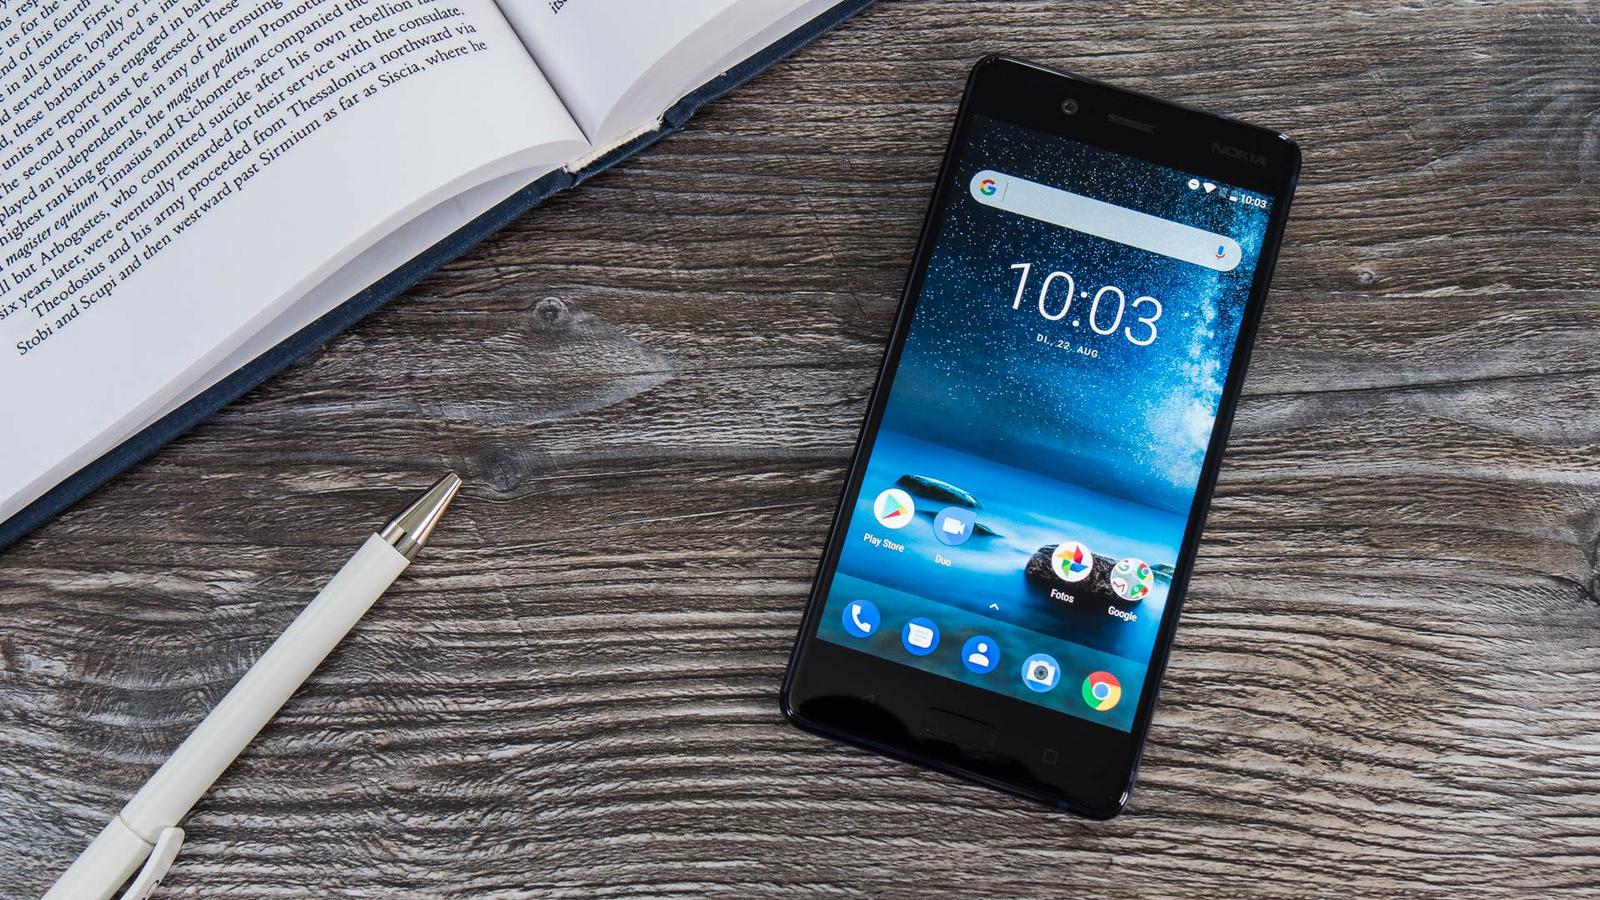 HMD Gobal Chính thức phát hành bản cập nhật Android Oreo 8.1 cho Nokia 8